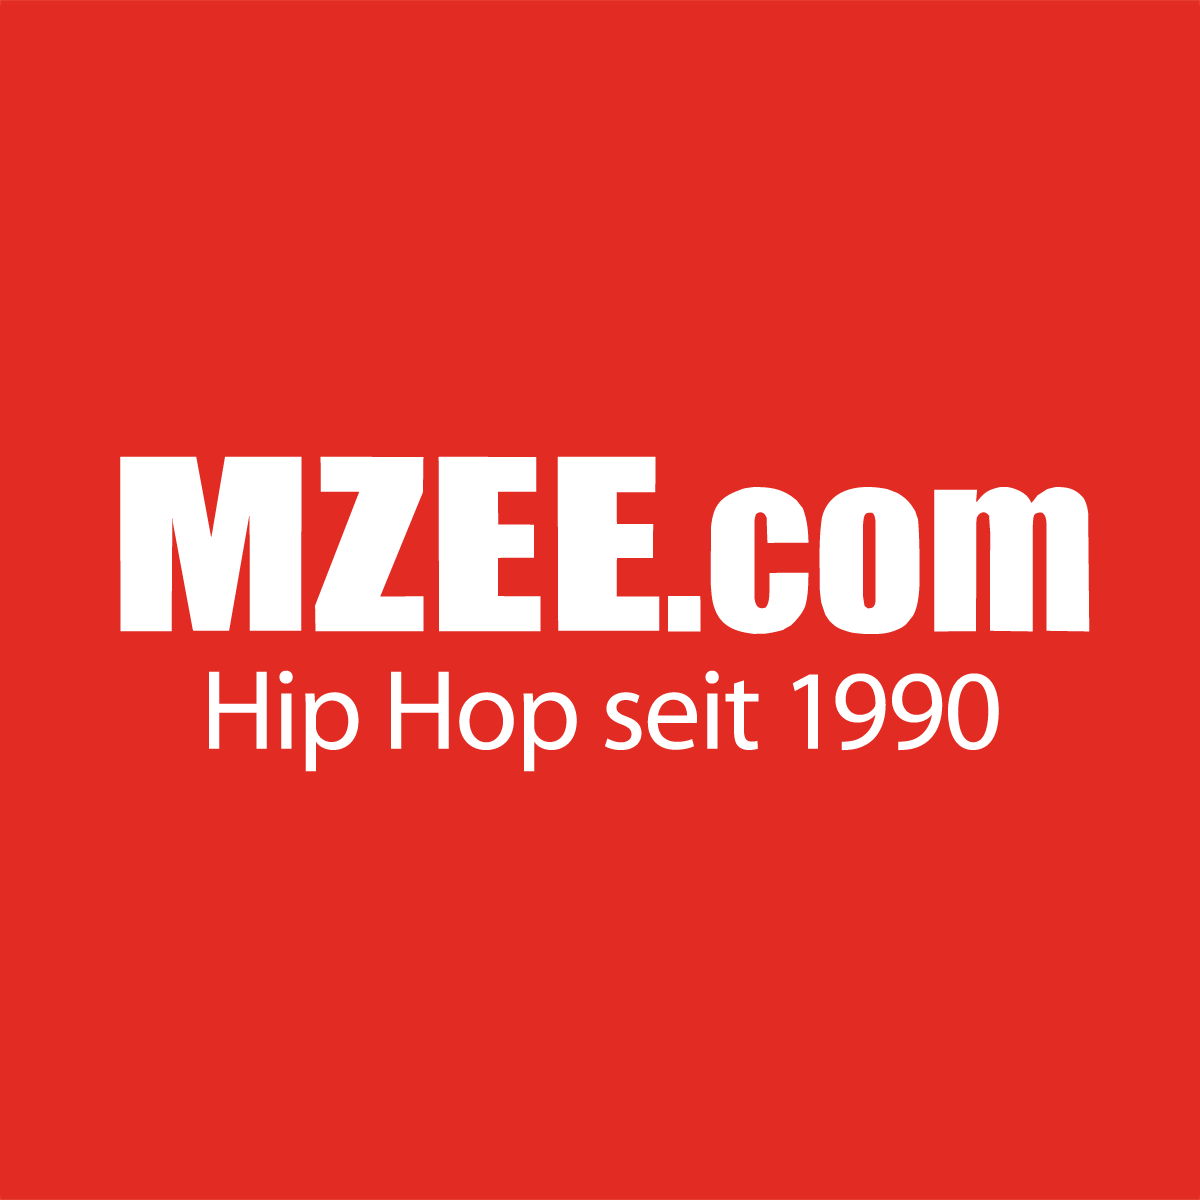 (c) Mzee.com